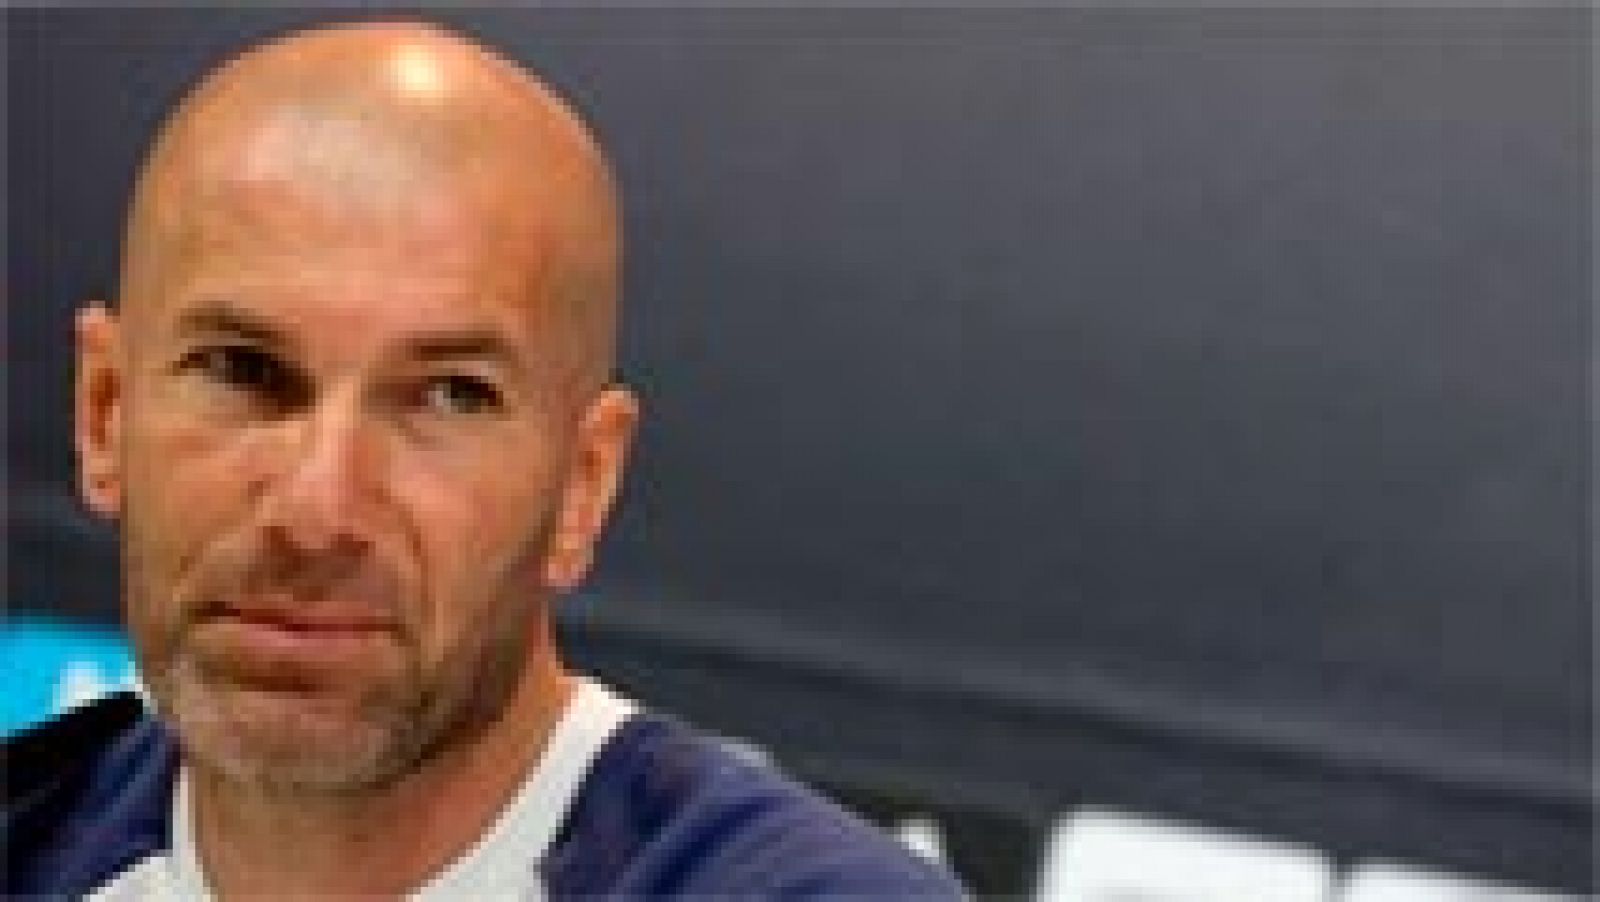 Telediario 1: Zidane: "Da igual el dibujo, lo que importa es la actitud y la abnegacion" | RTVE Play